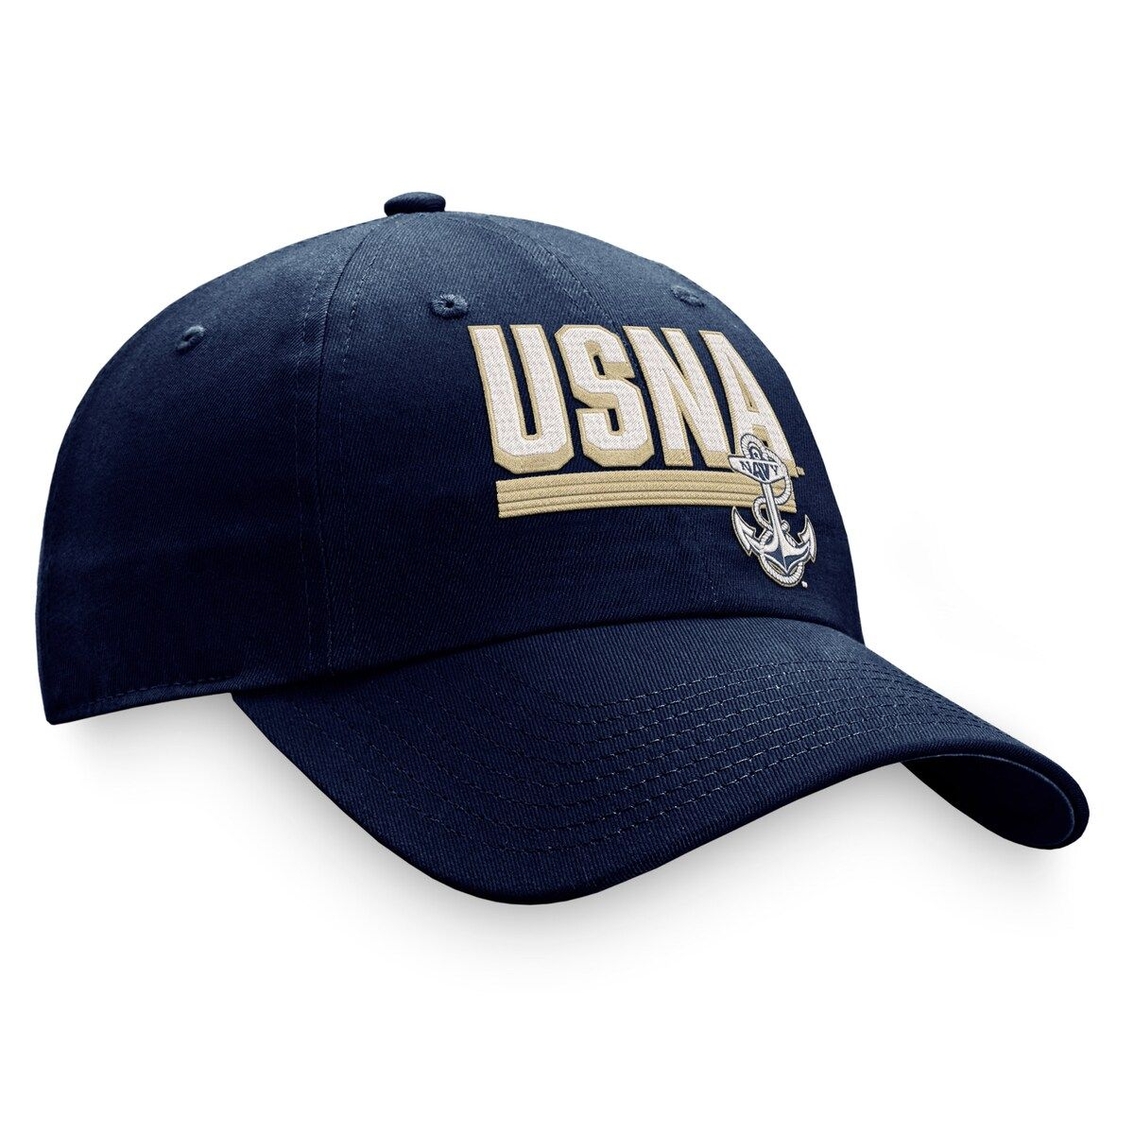 Top of the World Men's Navy Navy Midshipmen Slice Adjustable Hat - Image 4 of 4